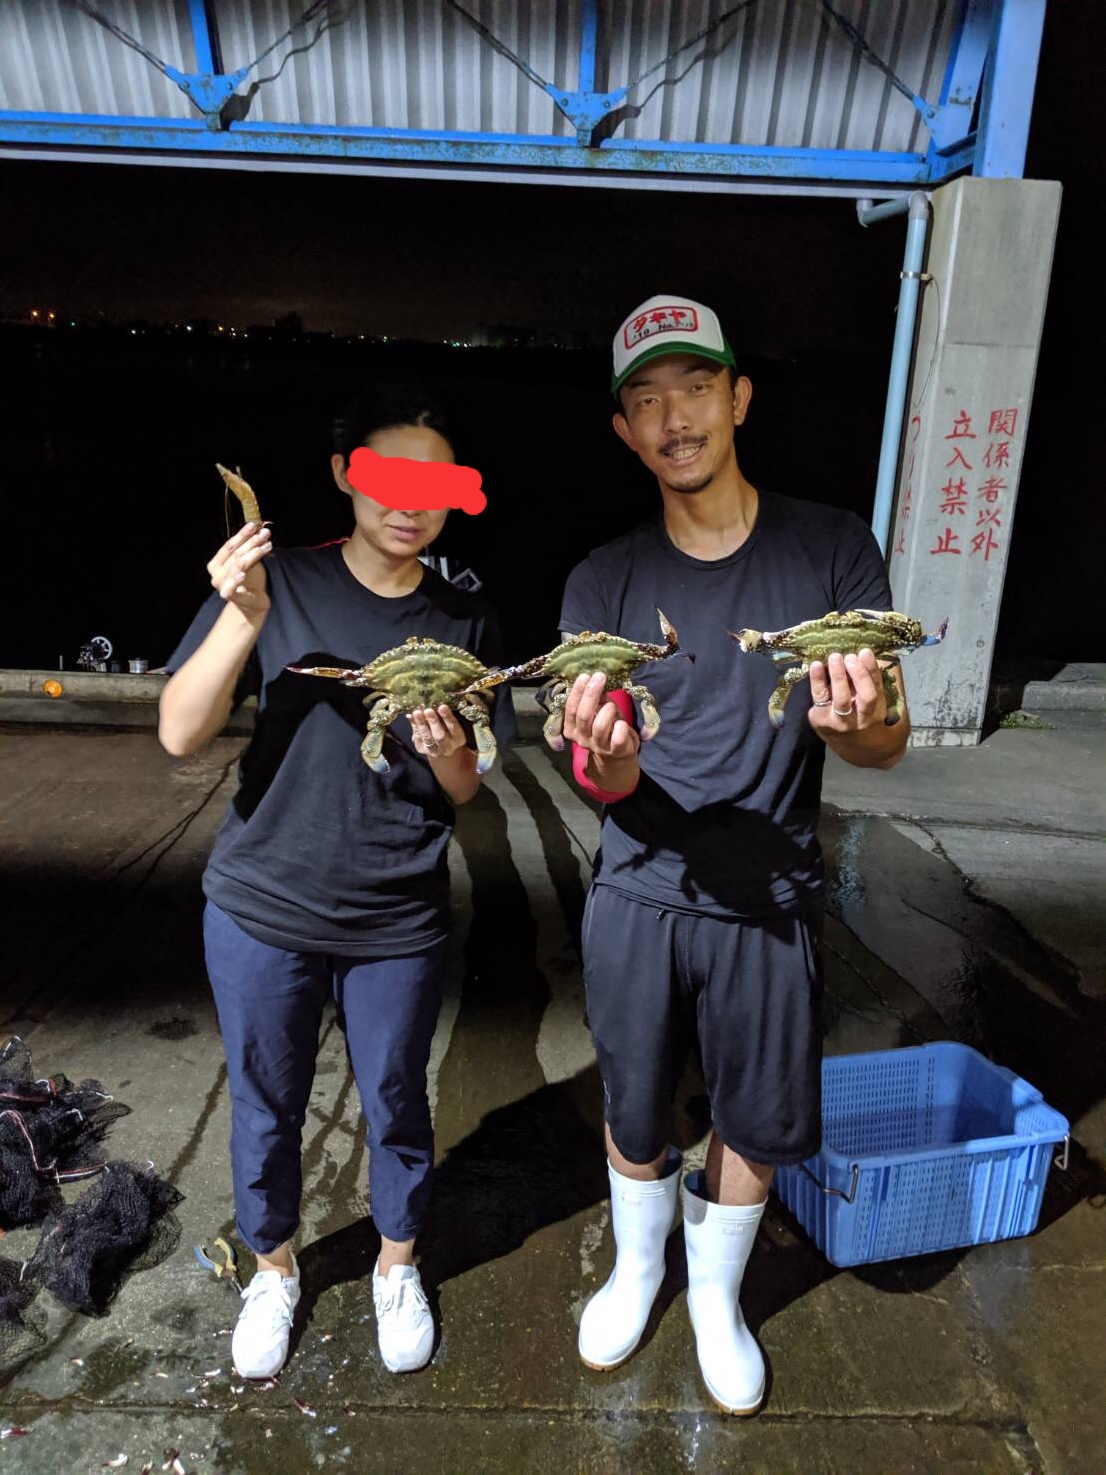 女性お一人様で浜名湖えびすき漁に遊びに来てくれました戀呂 浜名湖伝統漁法えびすき漁の極漁丸